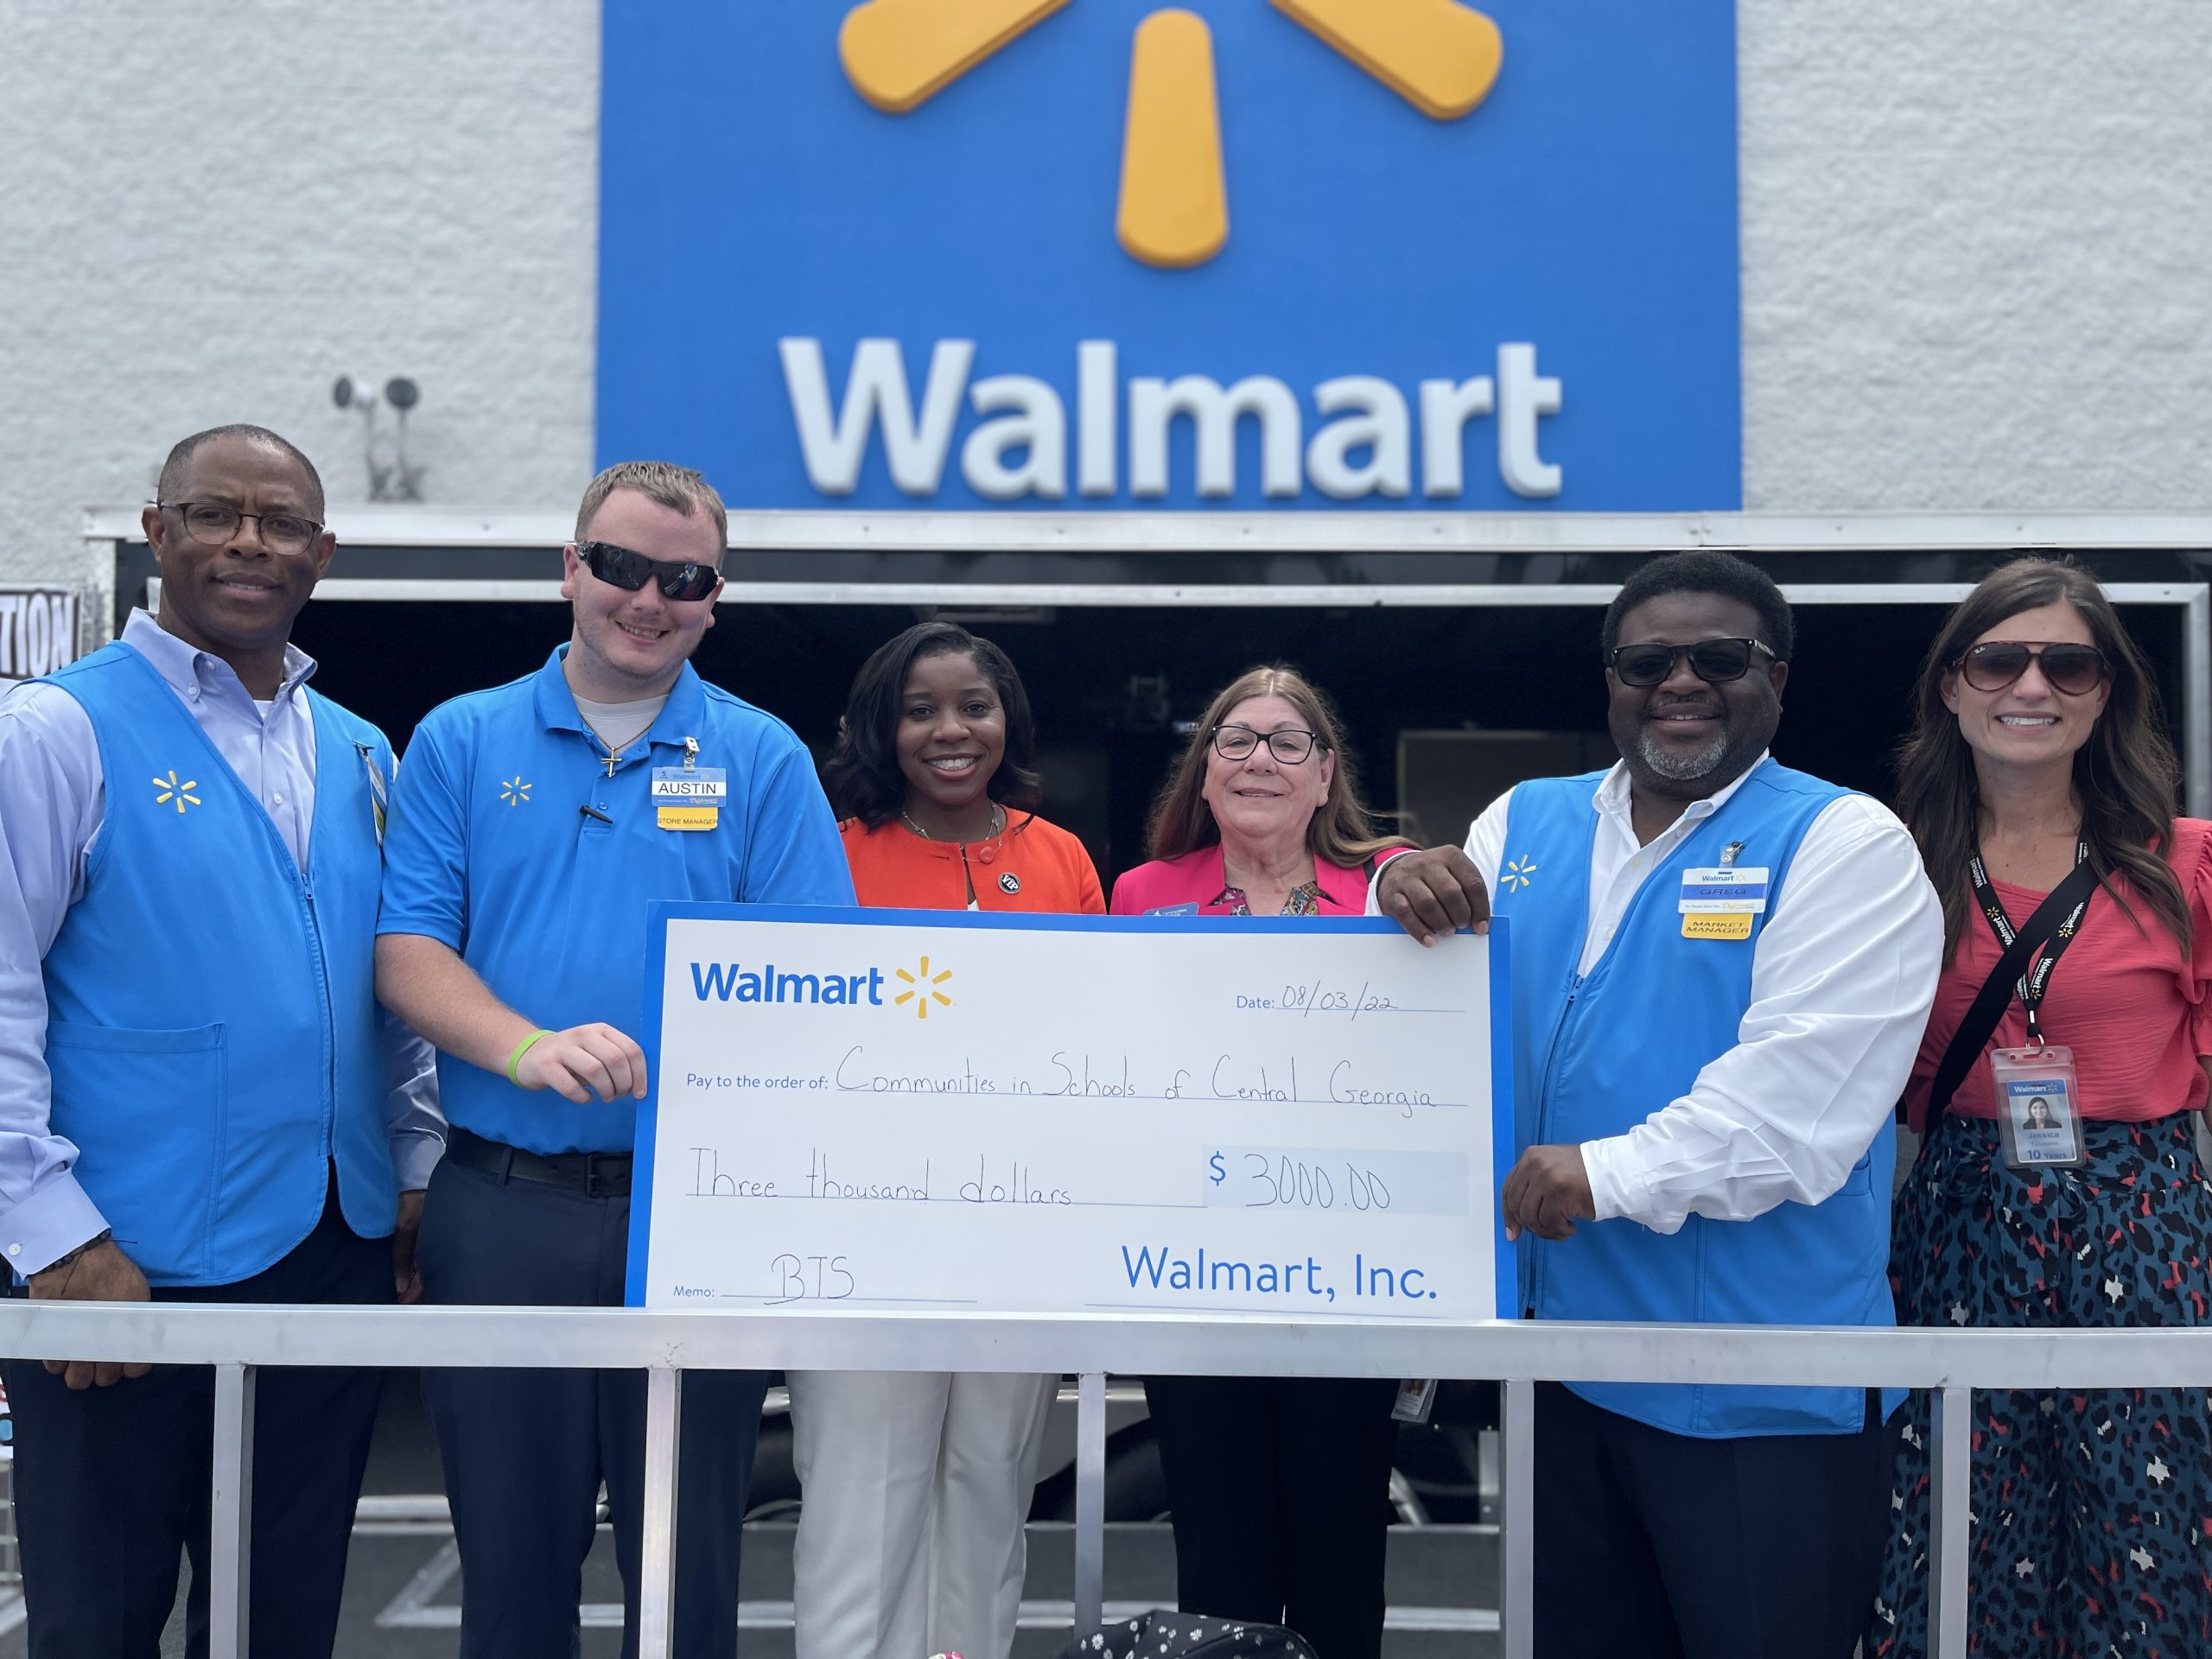 Walmart spendet Fahrräder und Geld an lokale Organisationen, um Studenten zu unterstützen